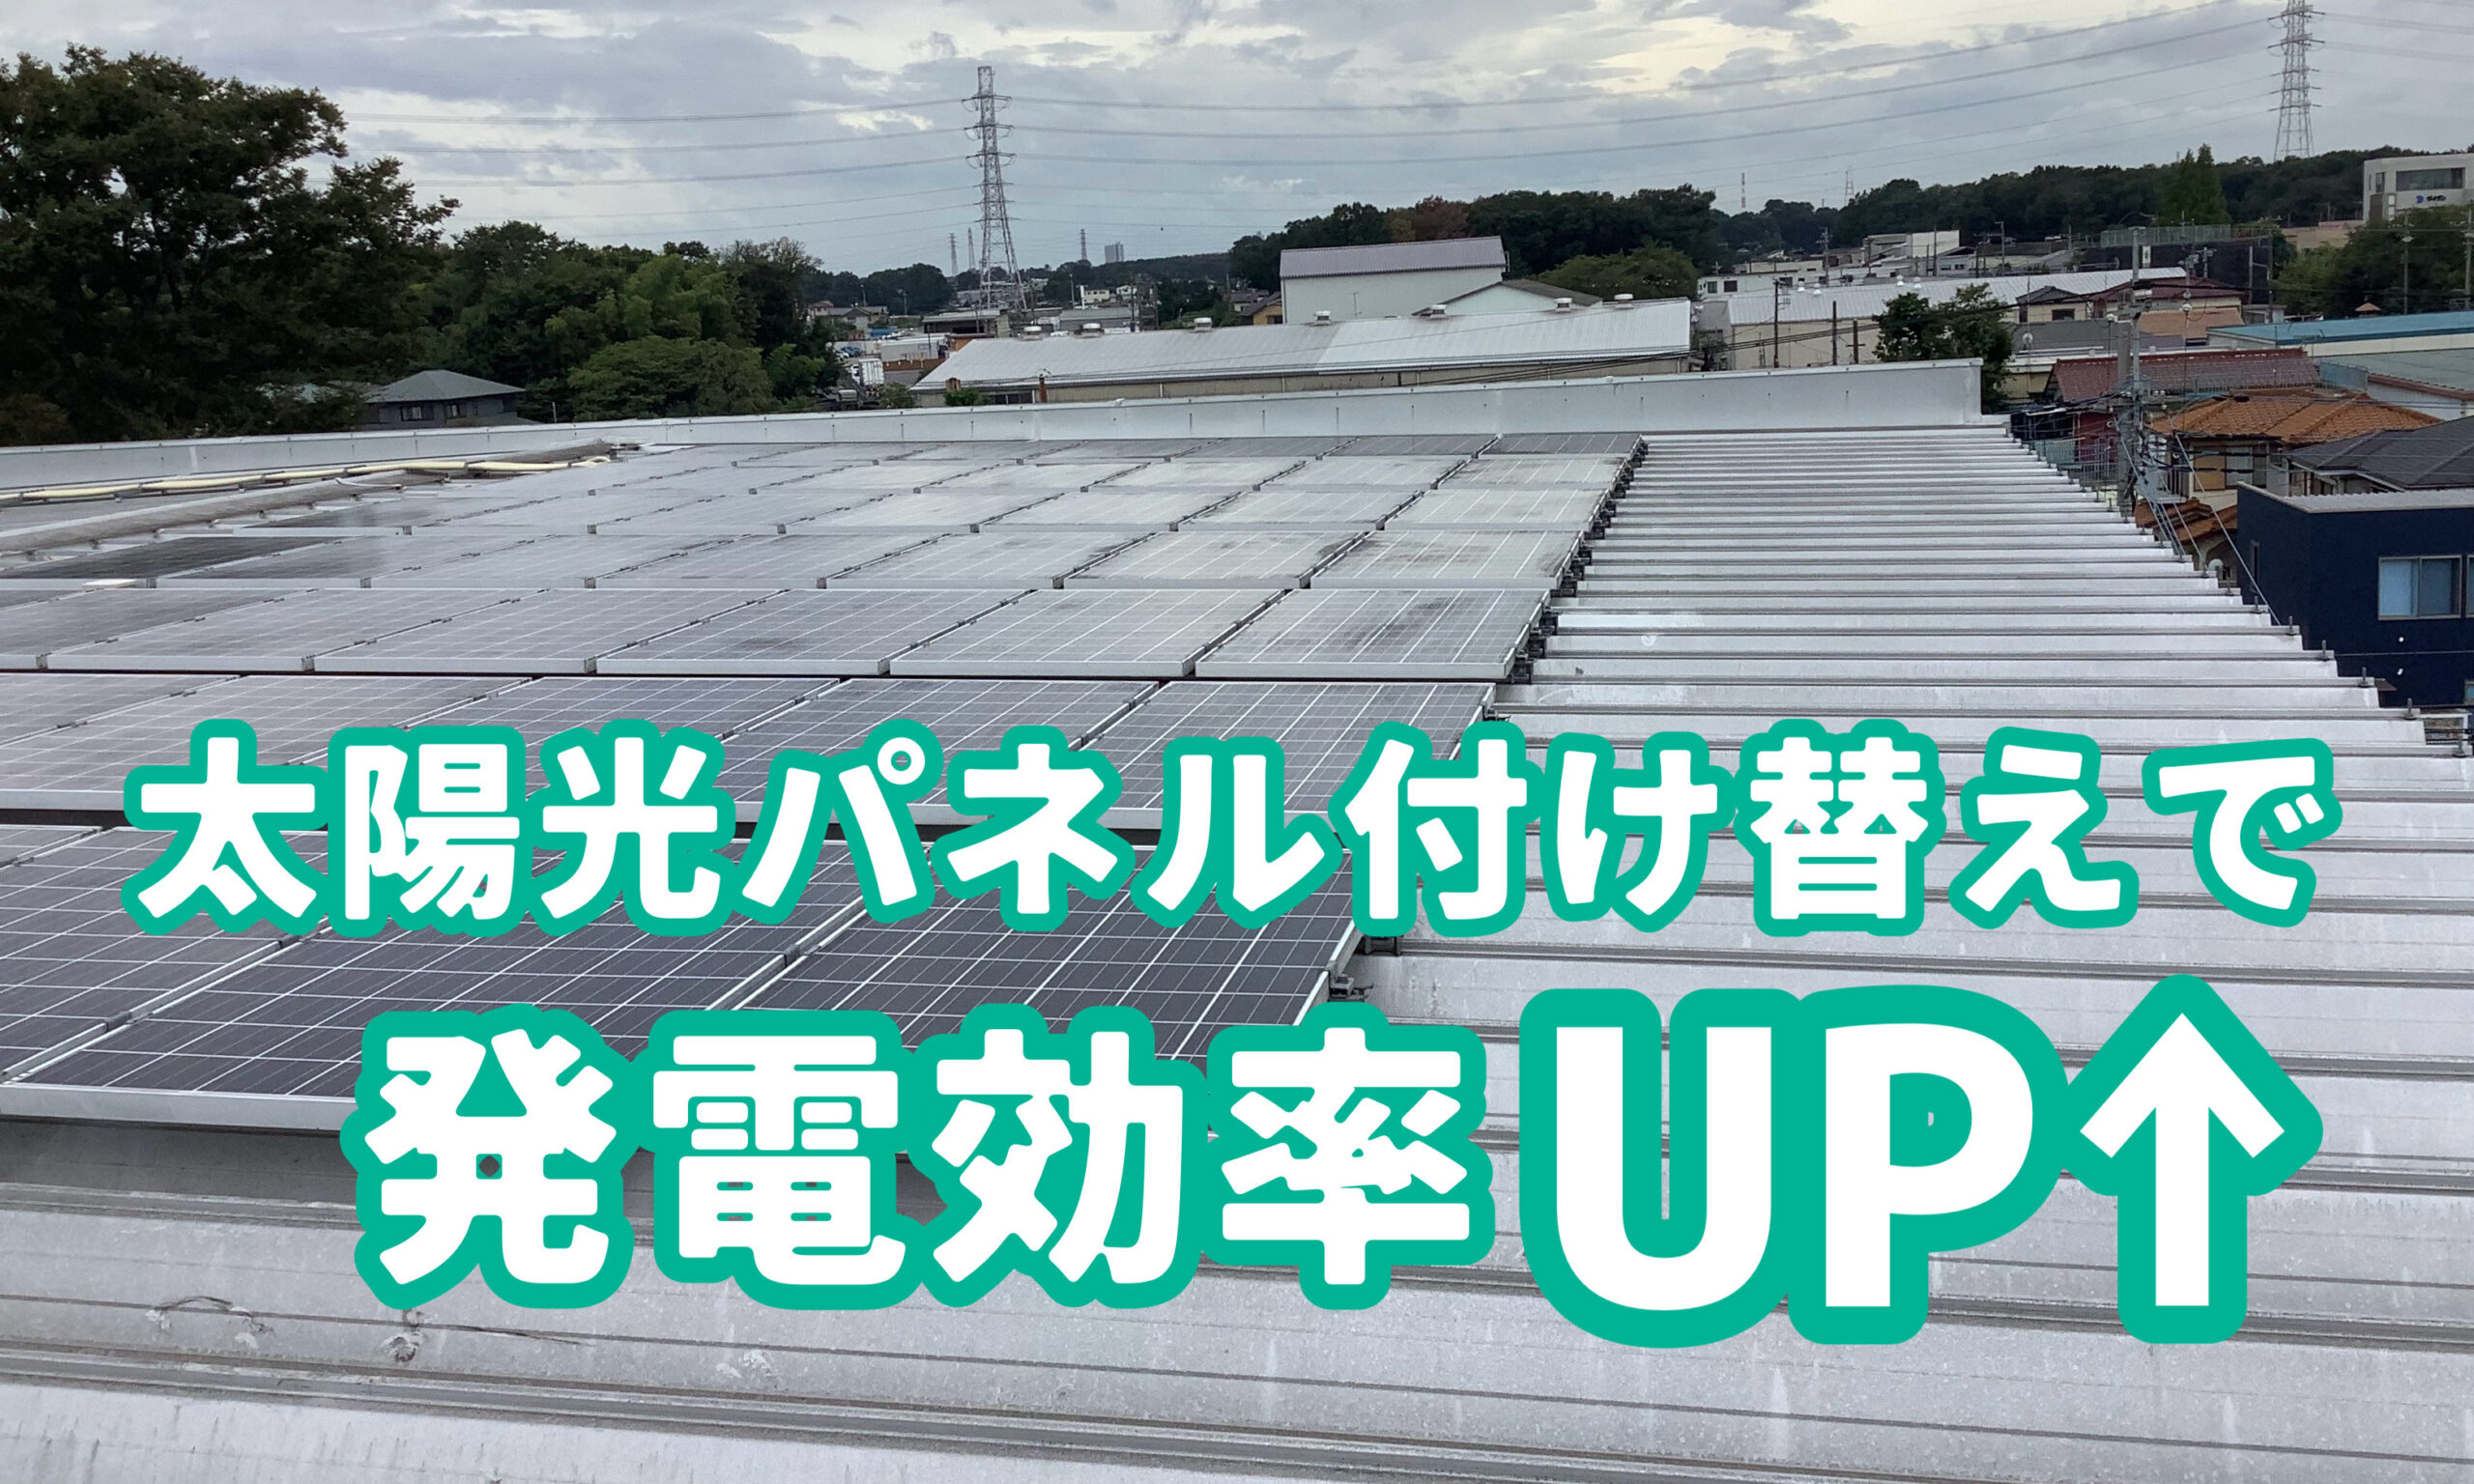 太陽光パネル付け替えで発電効率UP🆙 -渋谷区で太陽光パネルならY2エナジーグループ